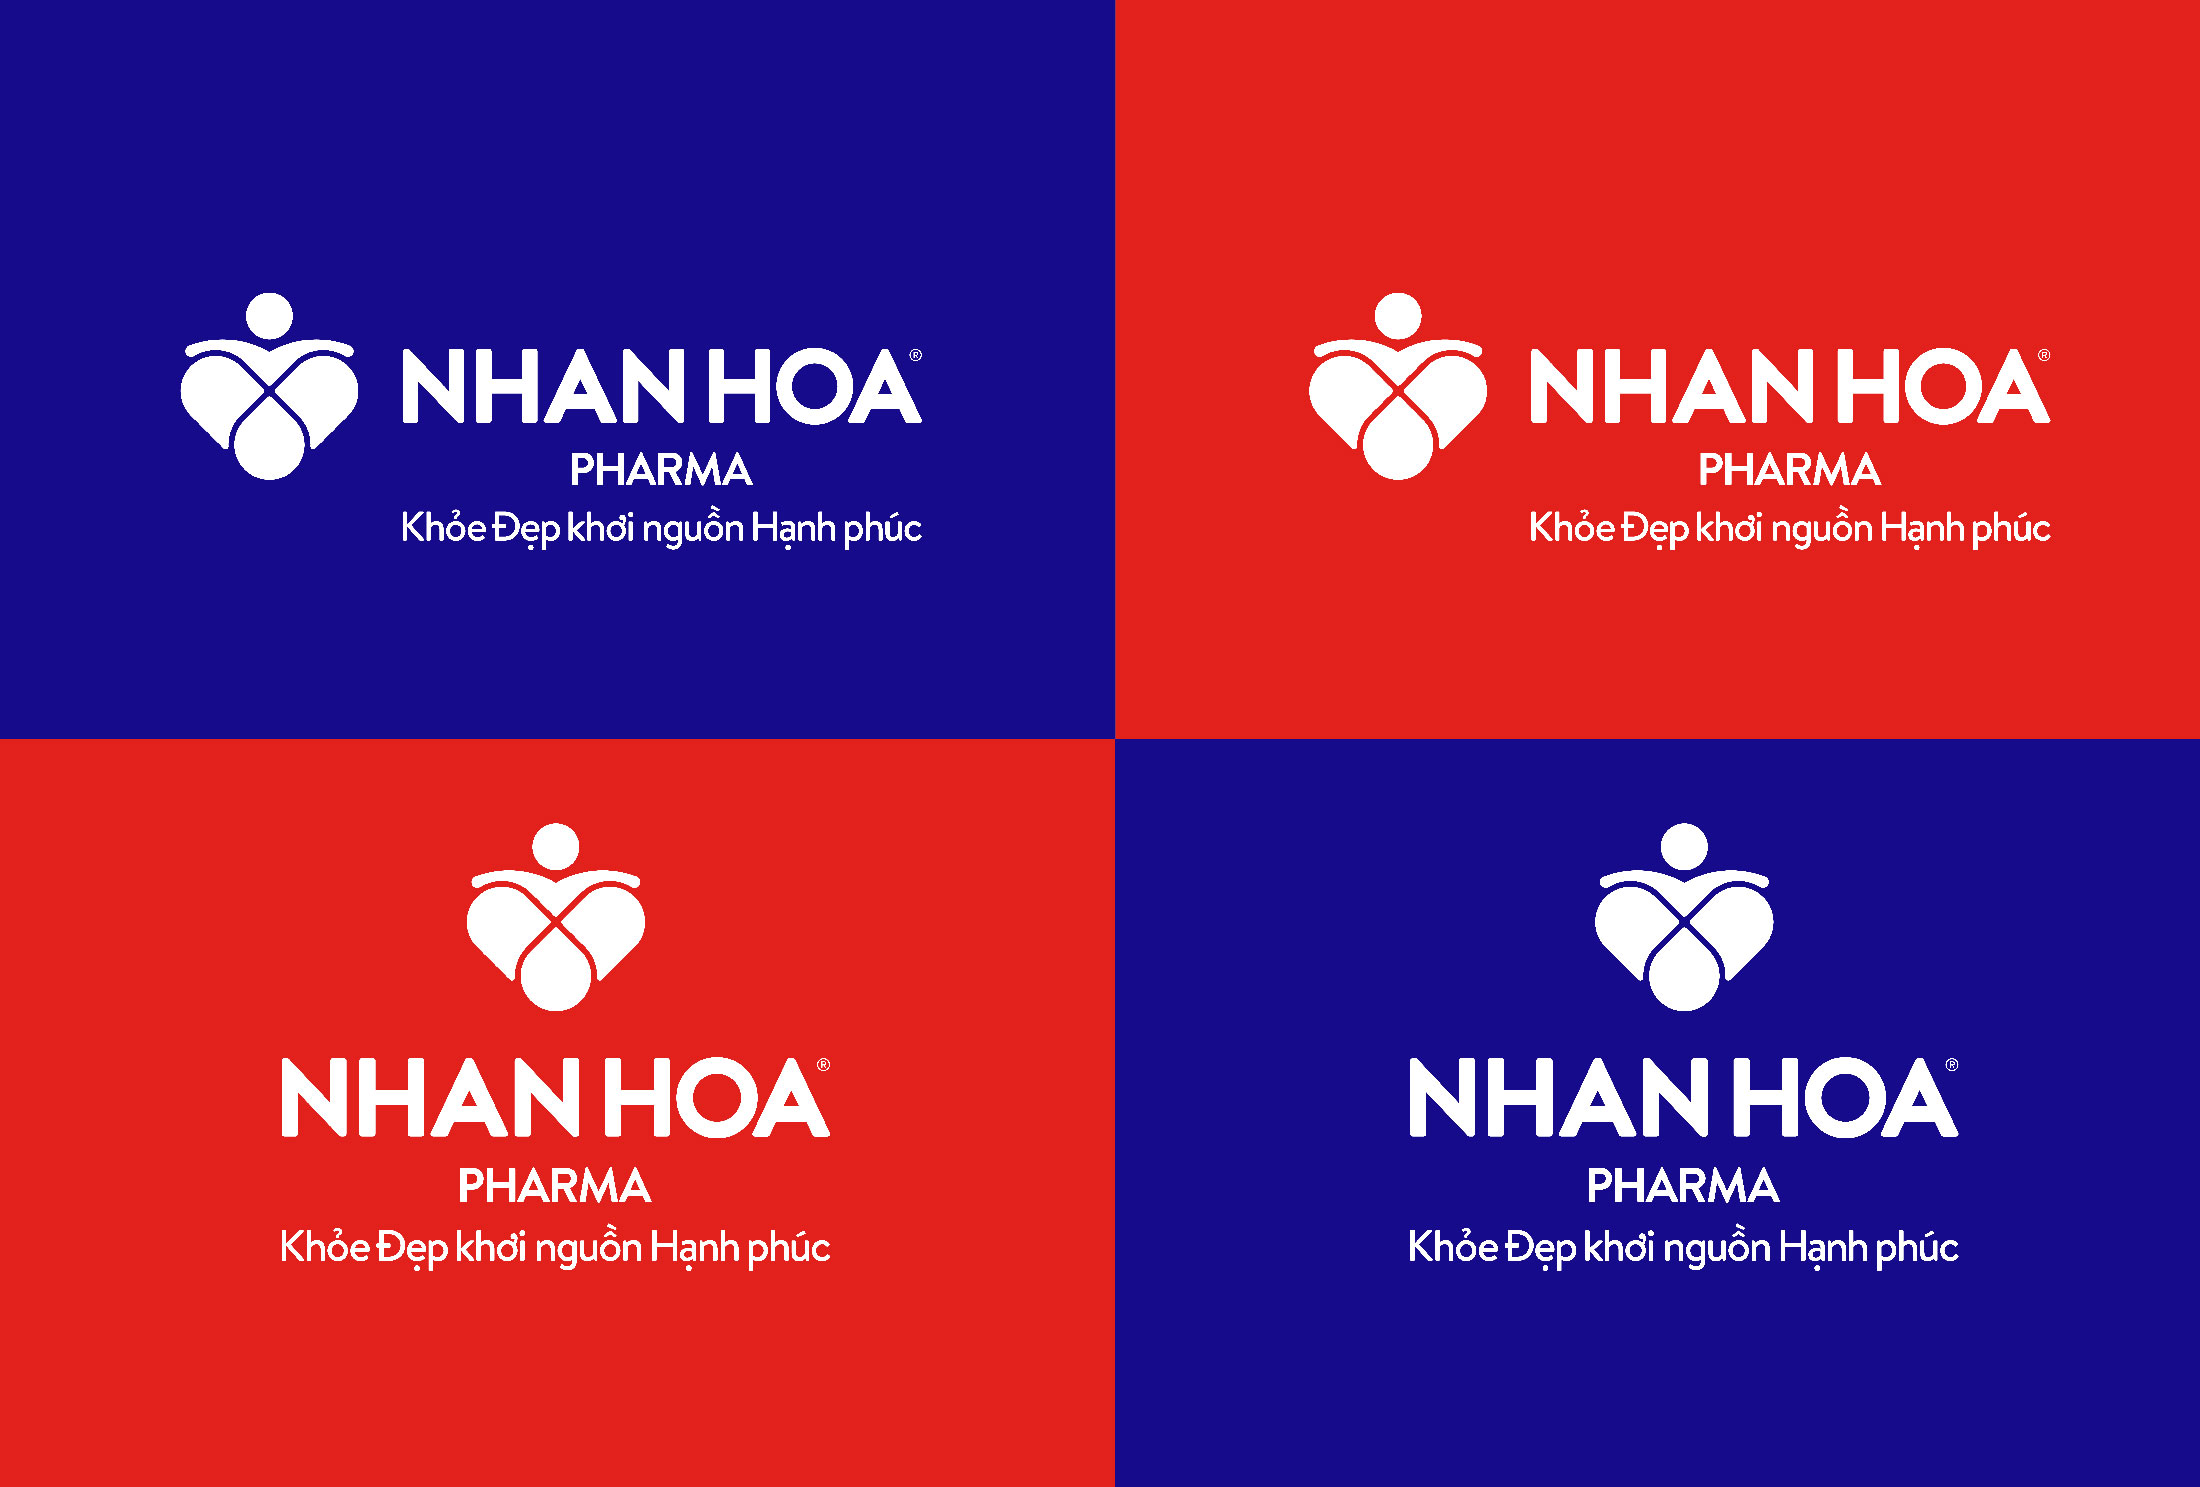 Nhan Hoa Pharma